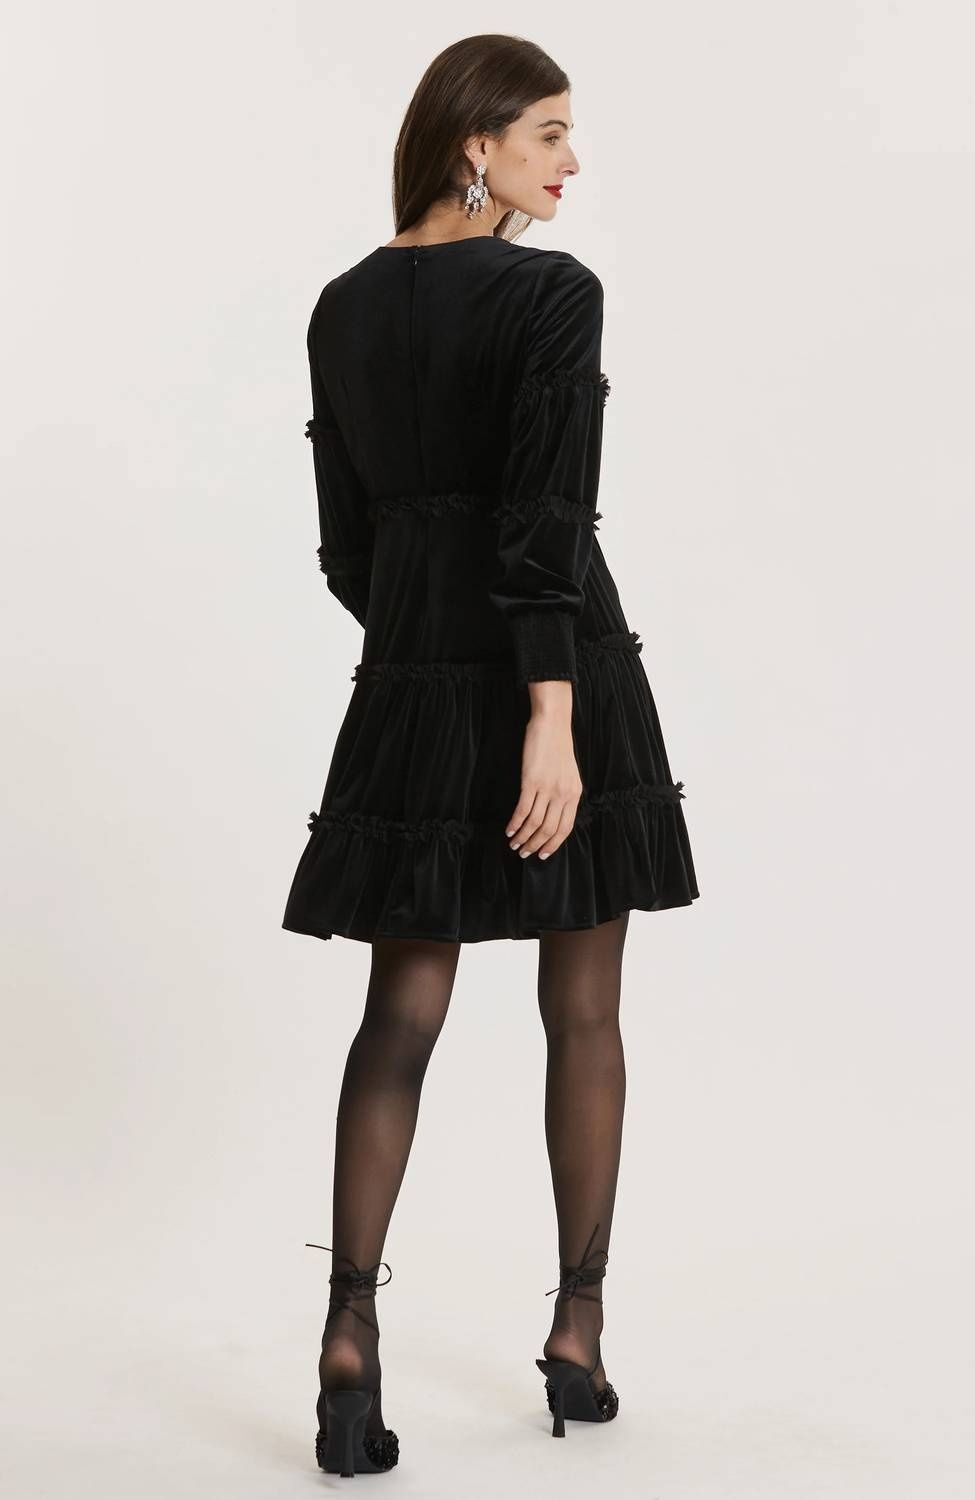 Style 1-797201448-1901 Tyler Boe Size 6 Long Sleeve Velvet Black Cocktail Dress on Queenly